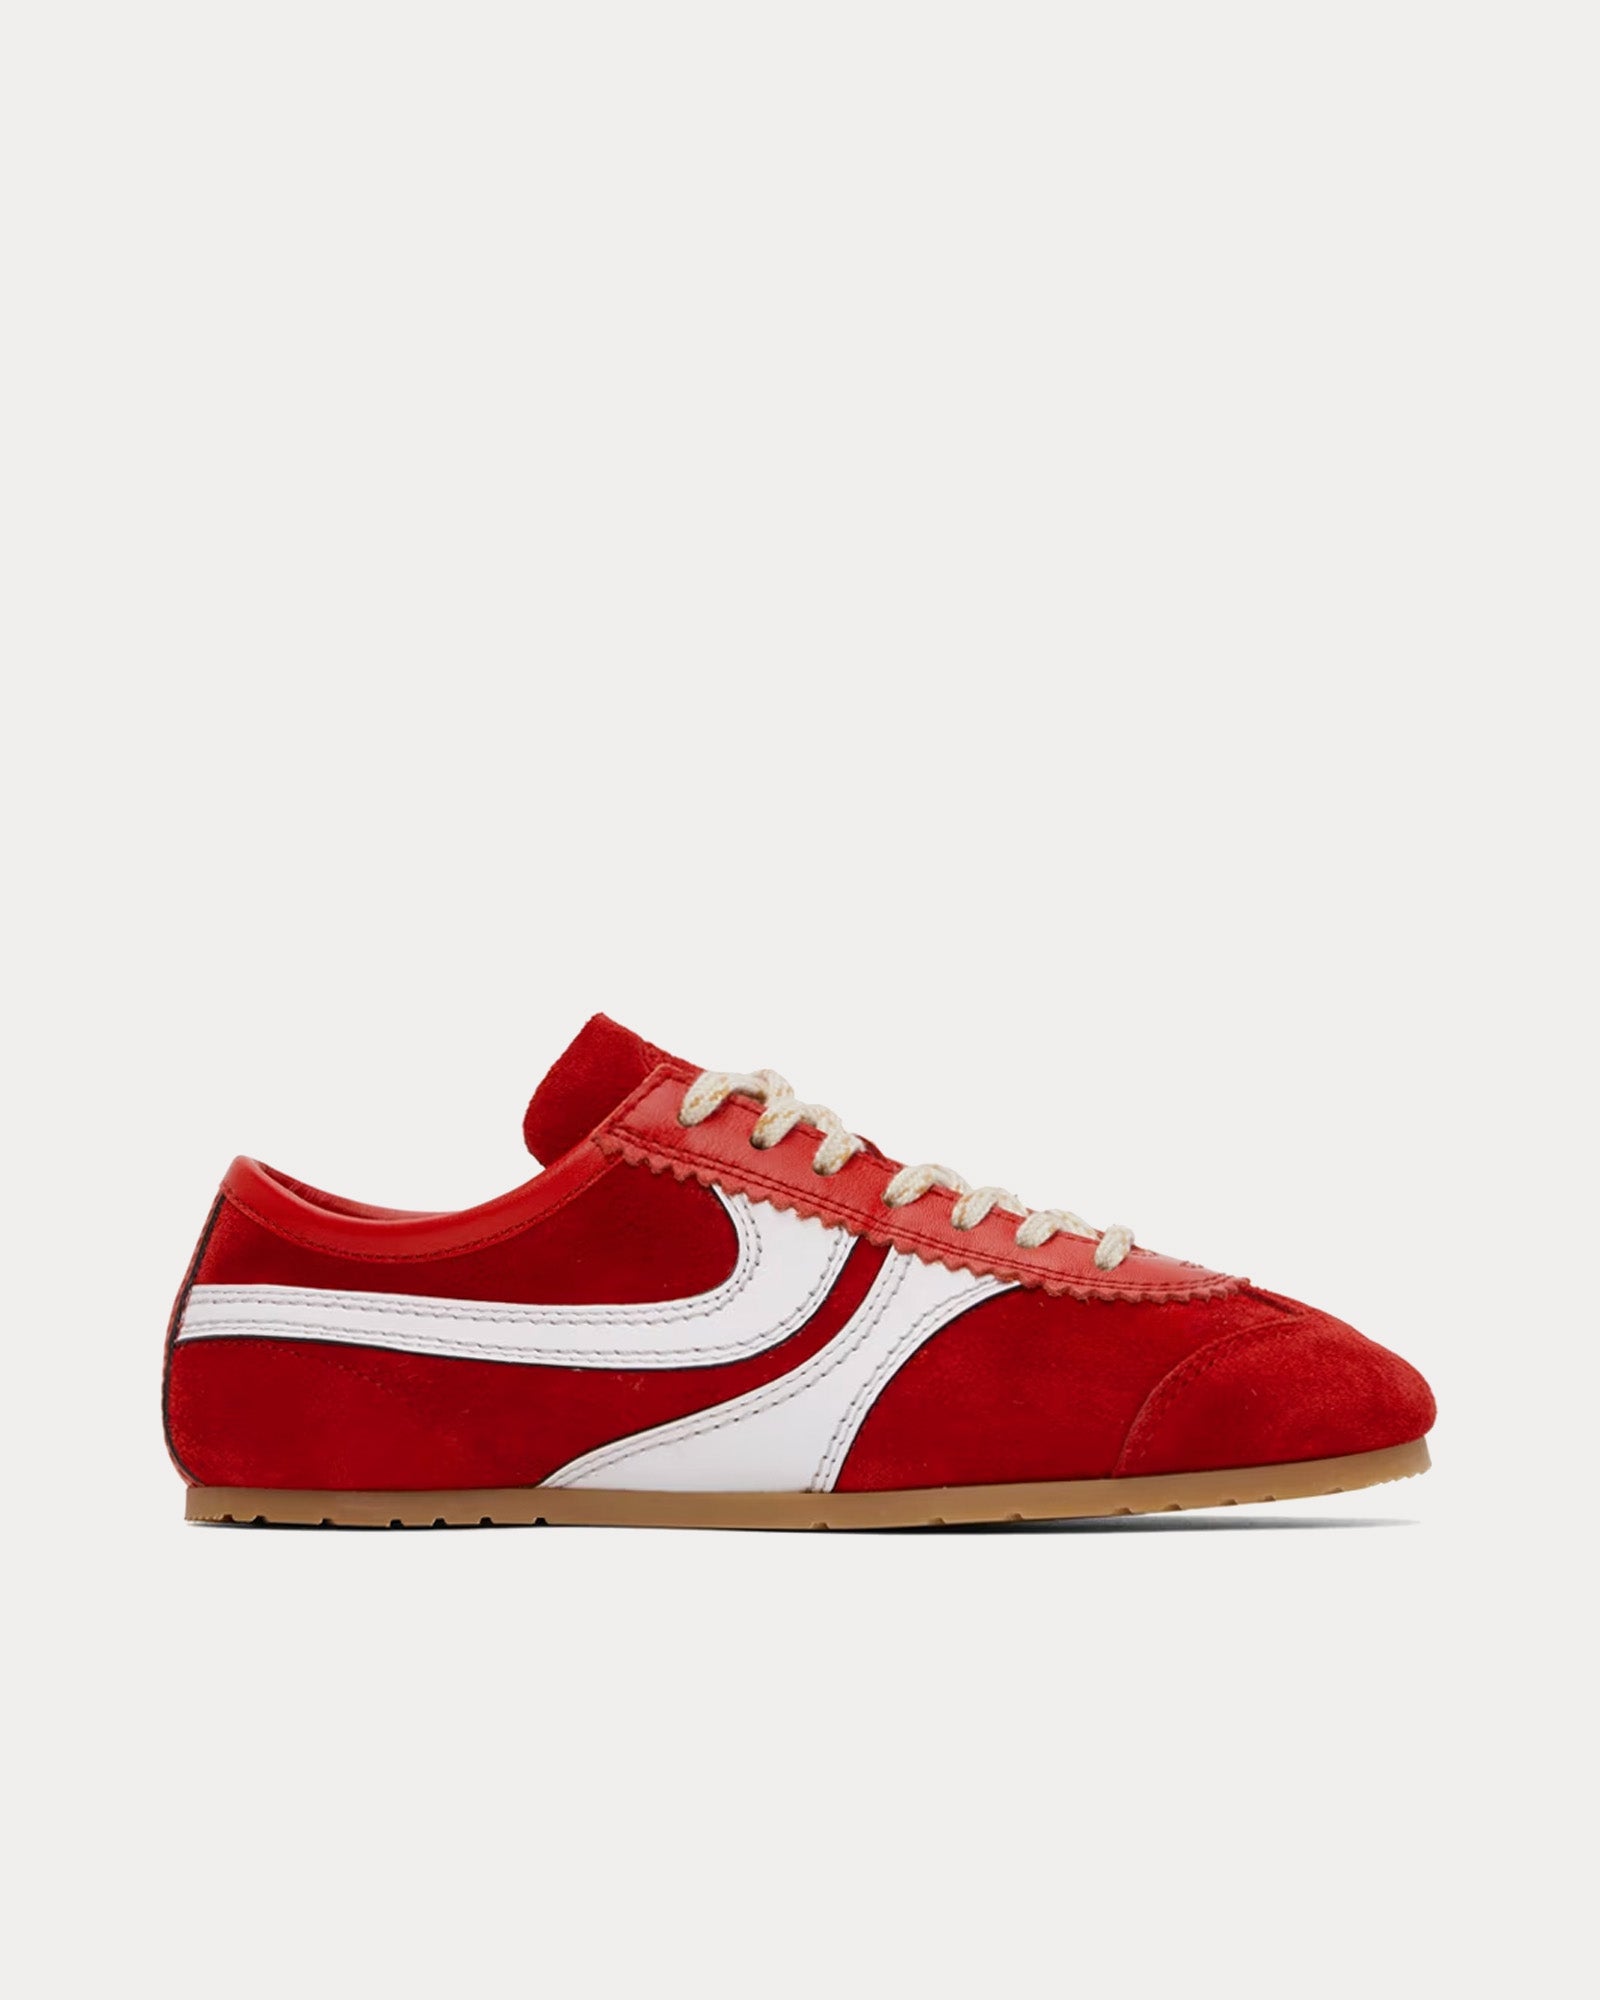 Dries Van Noten - 70's Suede Red Low Top Sneakers